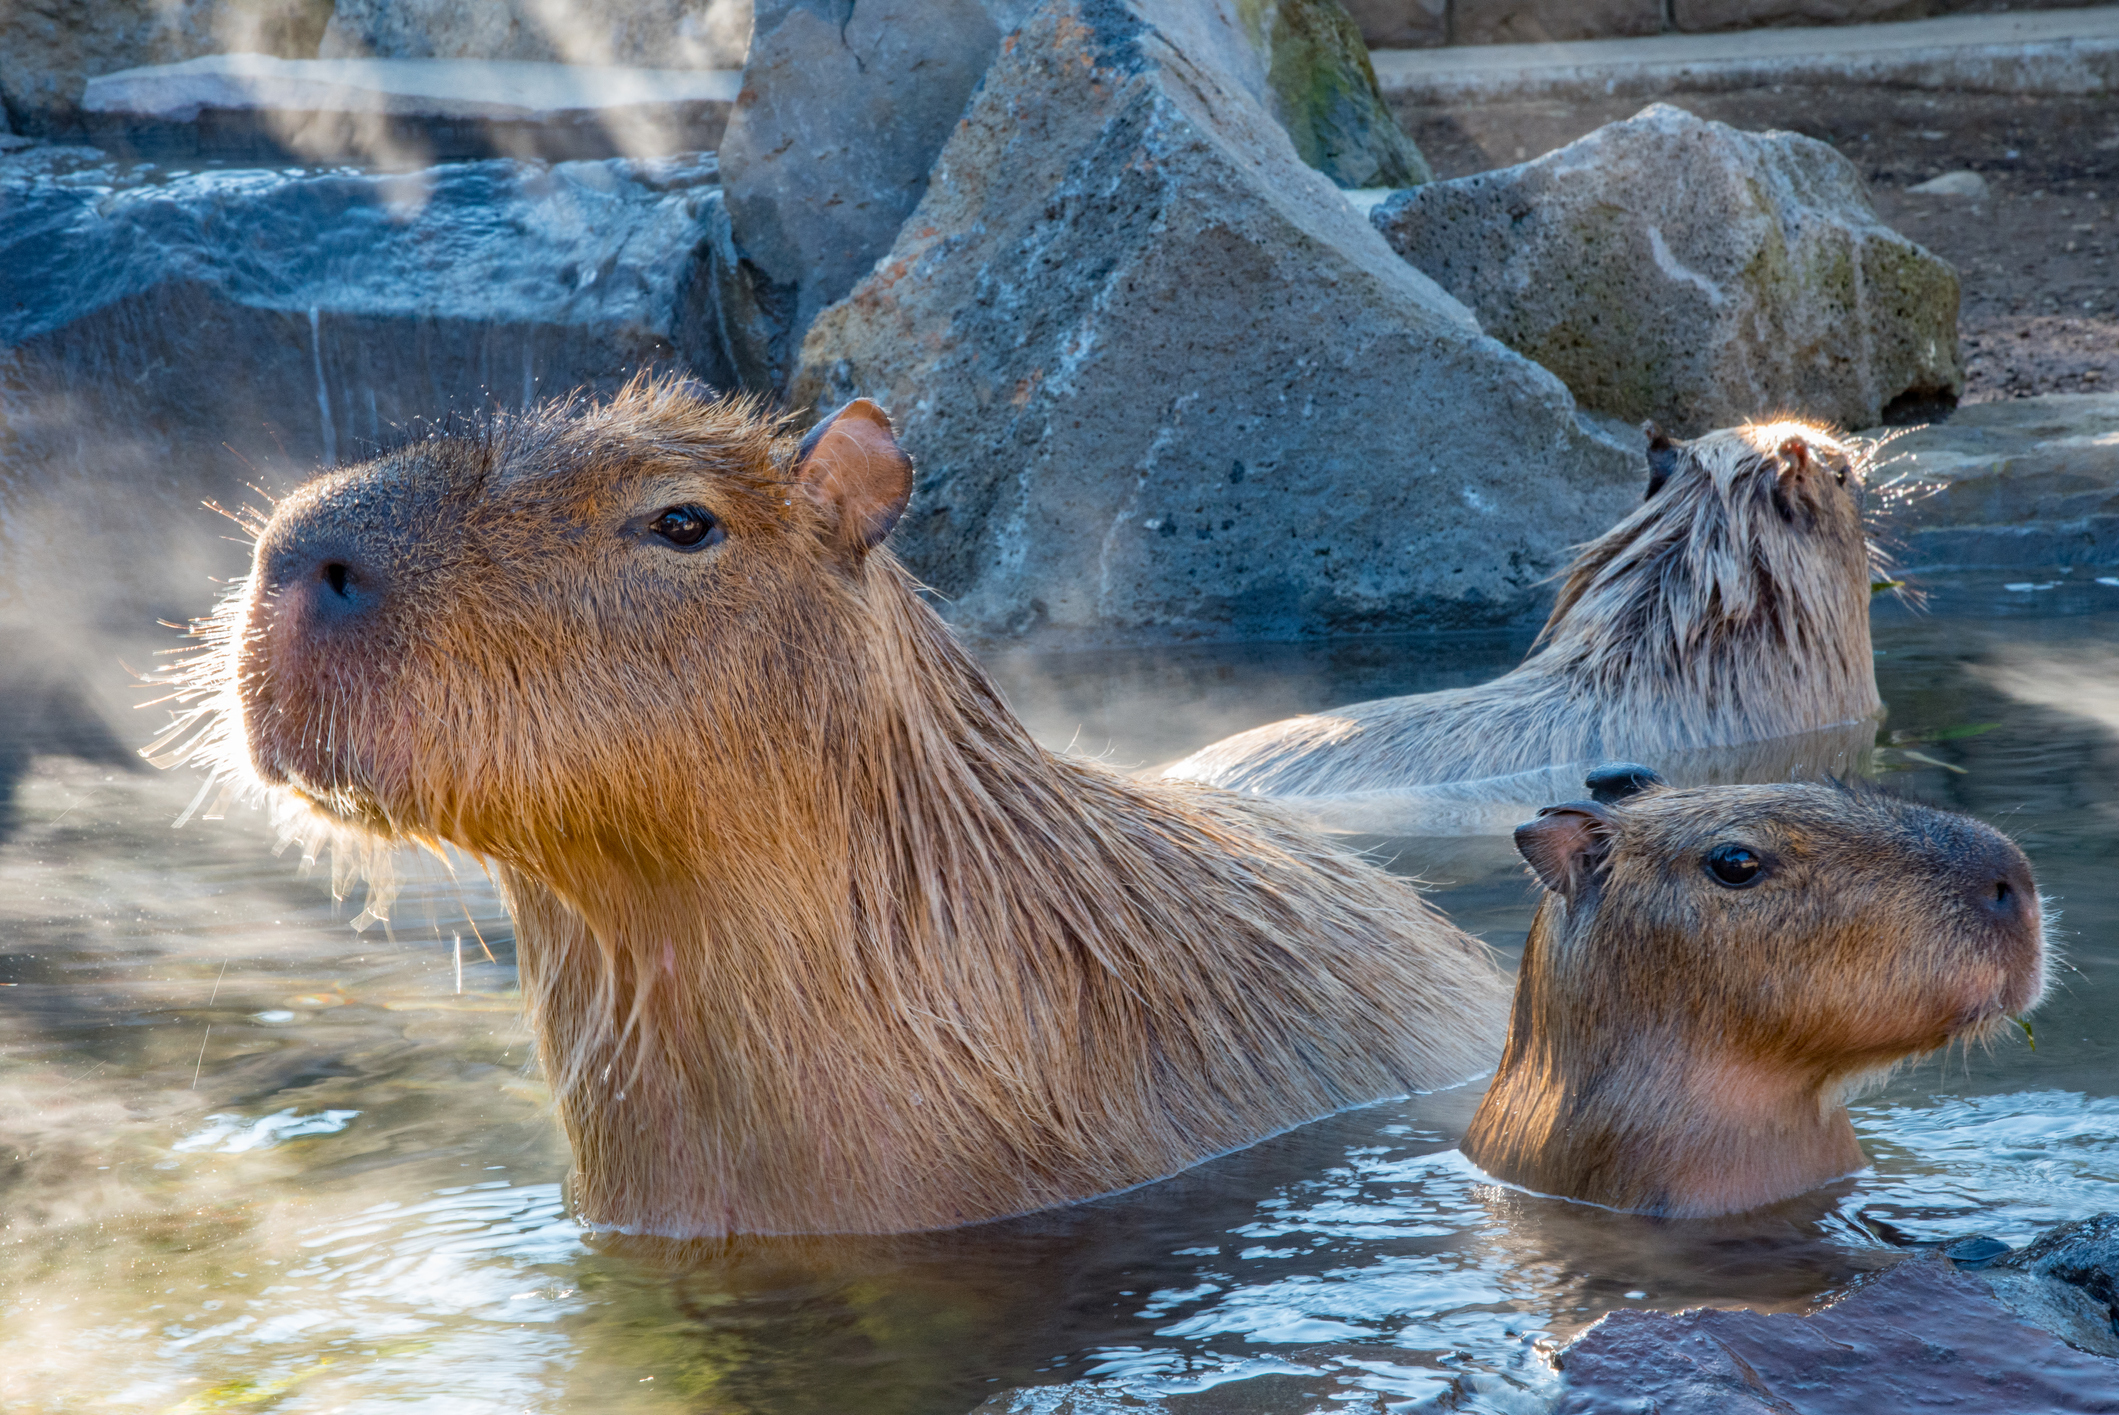 Can You Have a Capybara as a Pet?